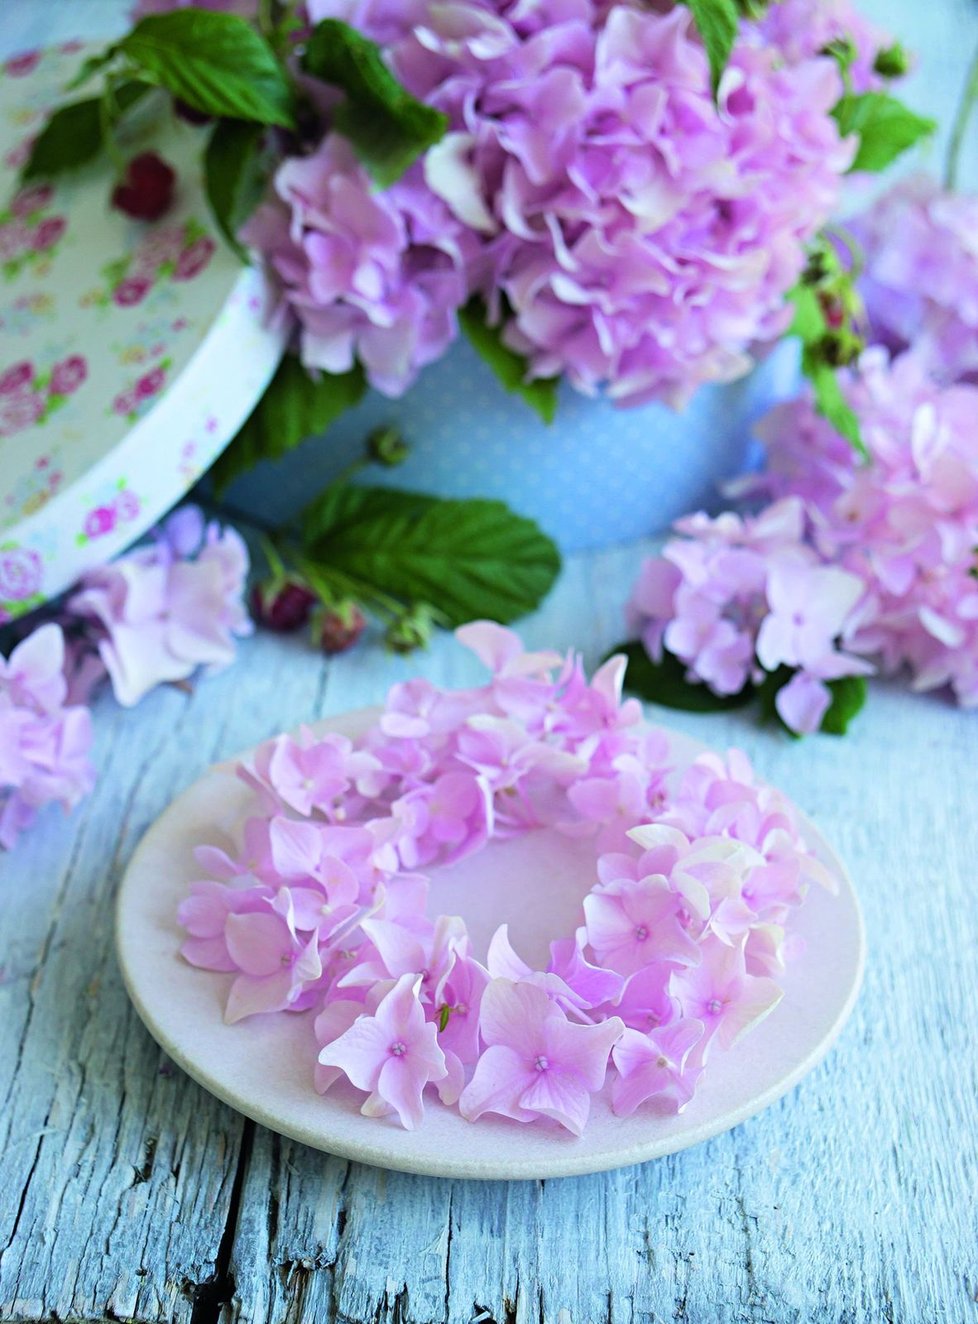 Drobné věnečky z růžových květů působí něžně a slavnostně při každé příležitosti. Co jimi ozdobit svatební tabuli?